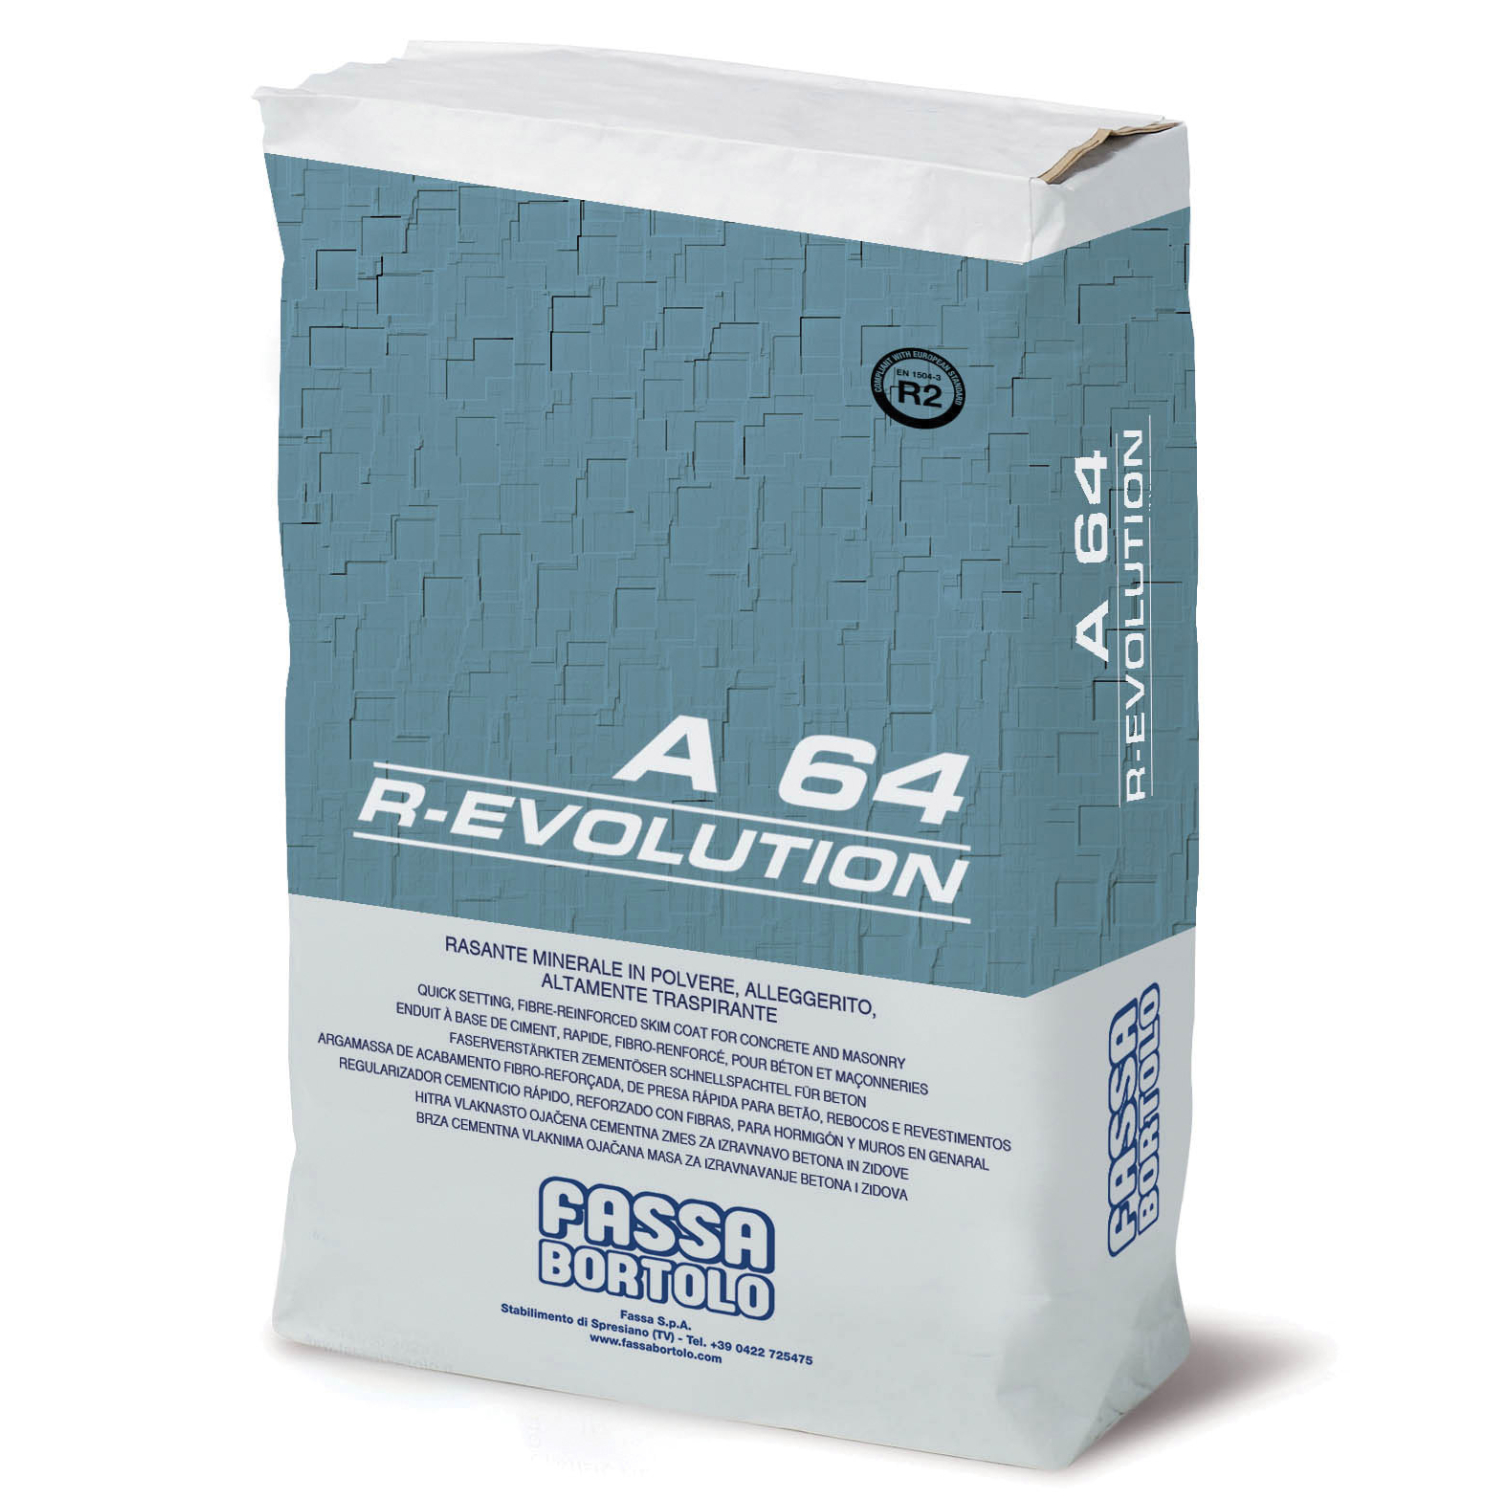 Argamassa Regularizadora Fassa A 64 R-EVOLUTION - Bege - Saco 25 kg